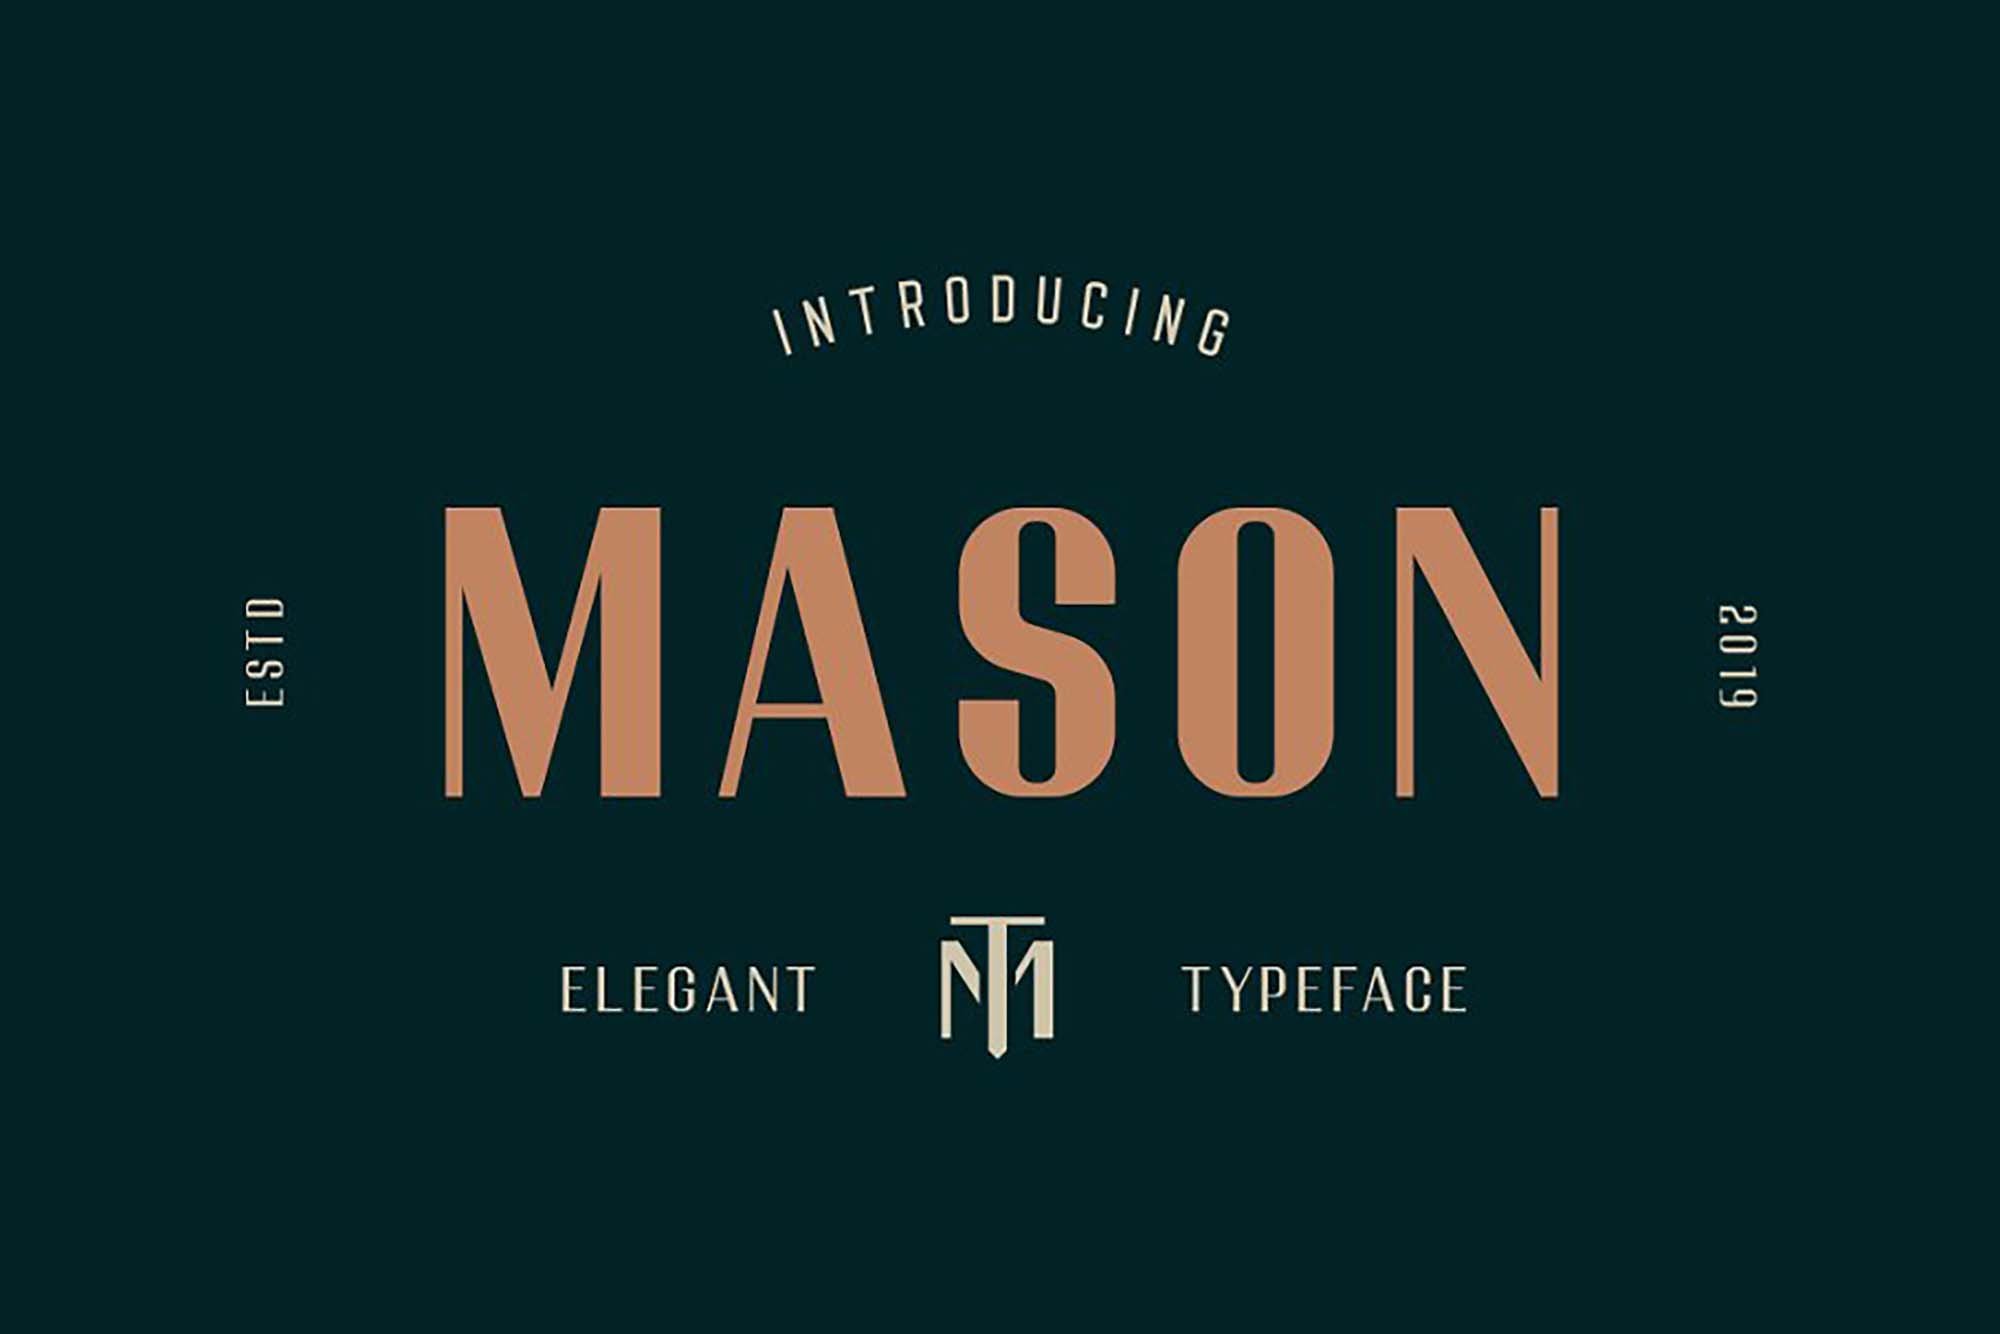 Mason Elegant Typeface Font